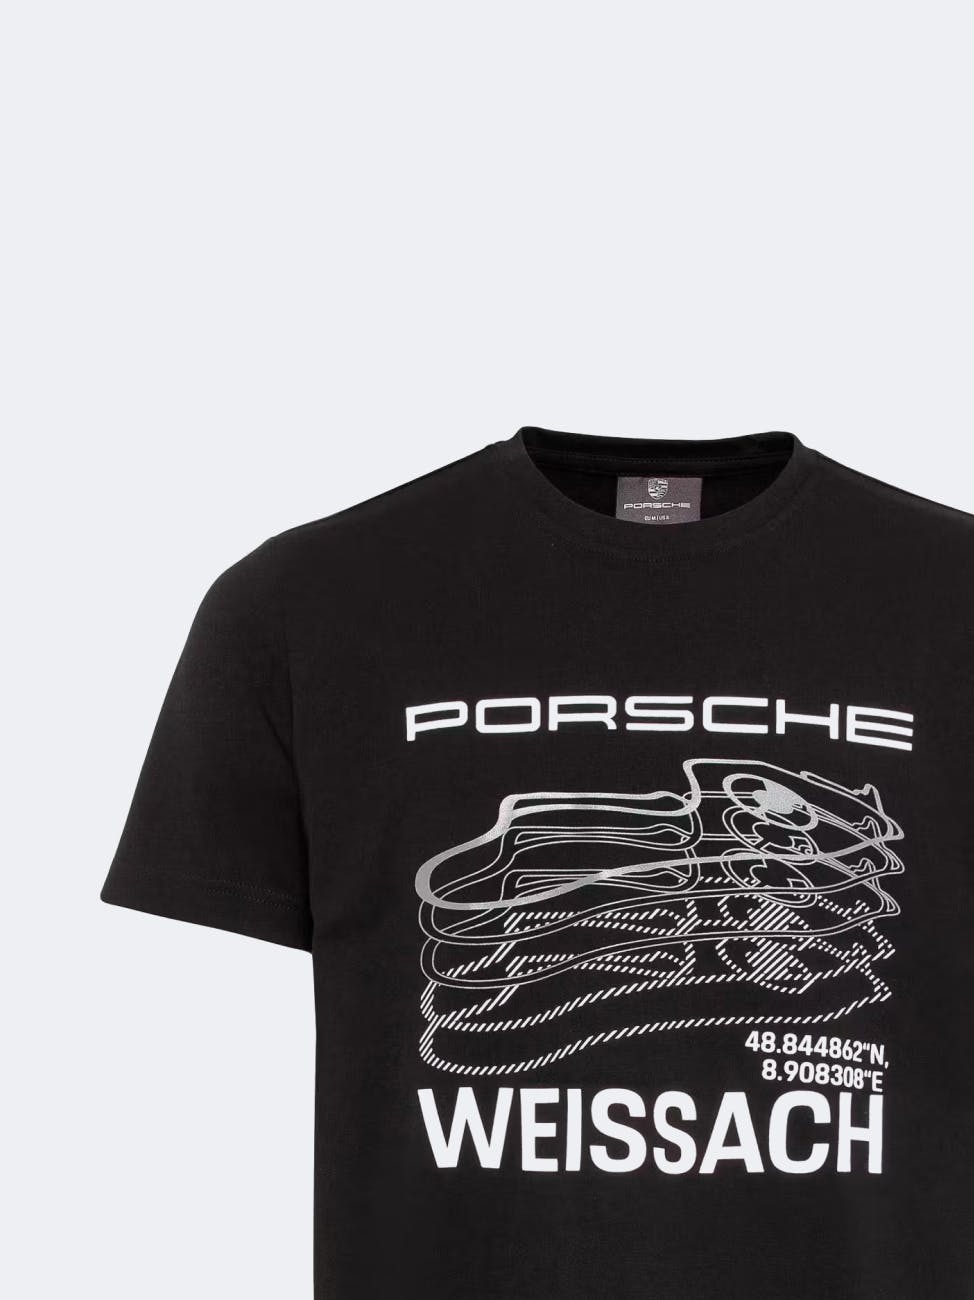 Soldes Accessoires Porsche - Nos bonnes affaires de janvier